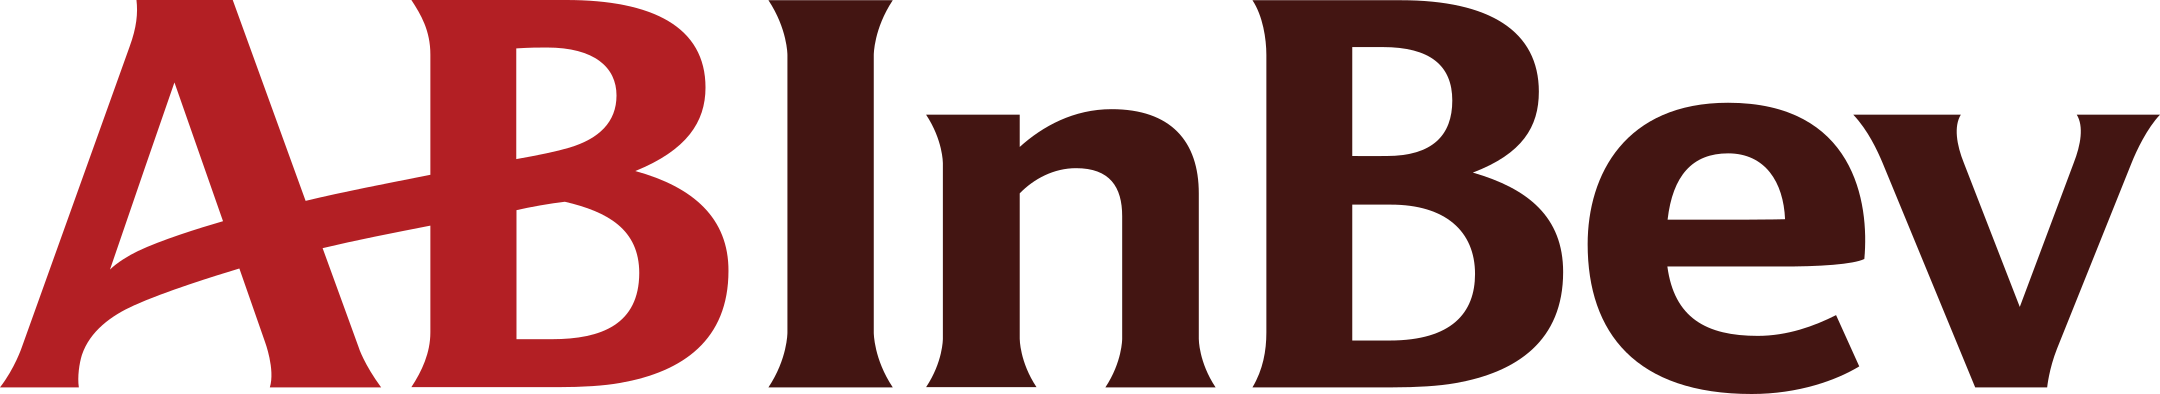 Anheuser-Busch InBev Logo Transparent File